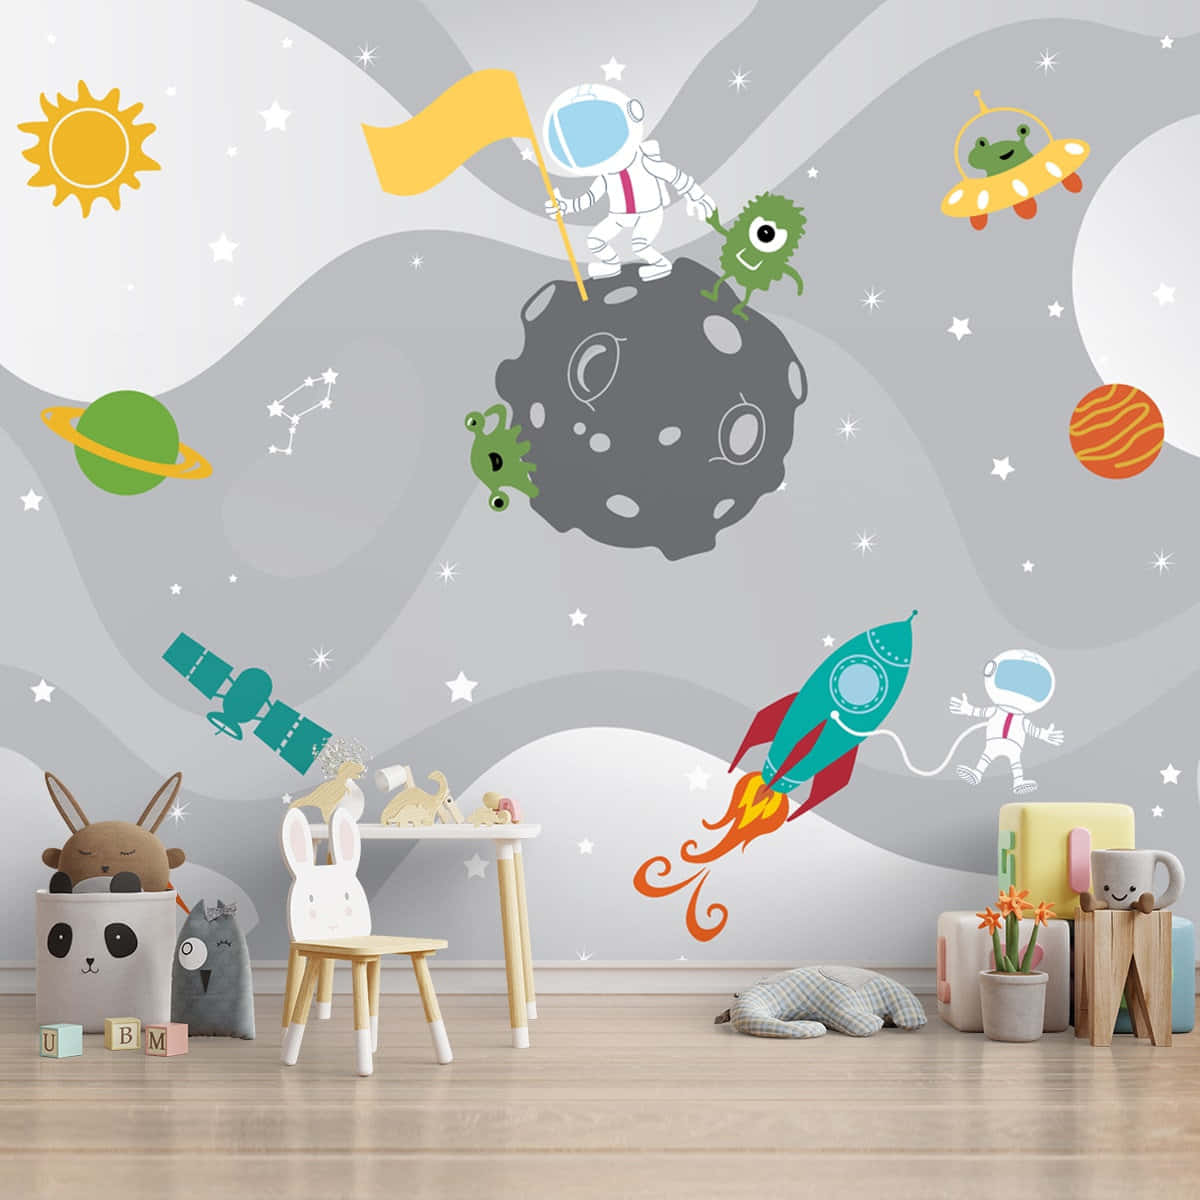 Rejsegennem Galakser Med Denne Ultranuttet Astronaut! Wallpaper